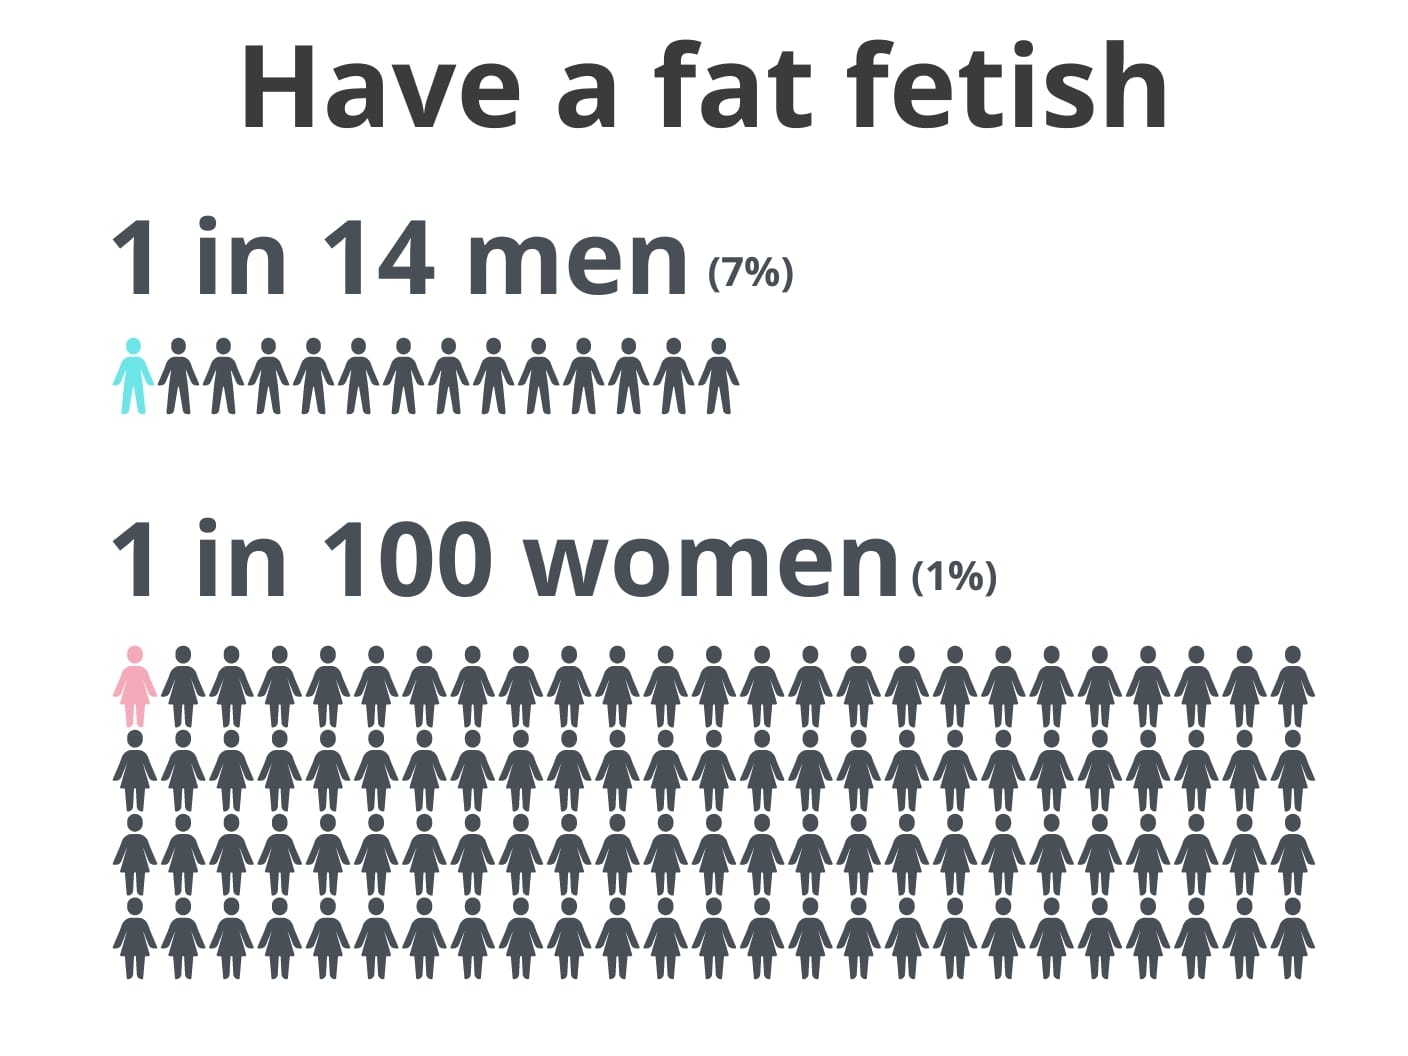 Fat fetish statistics by gender